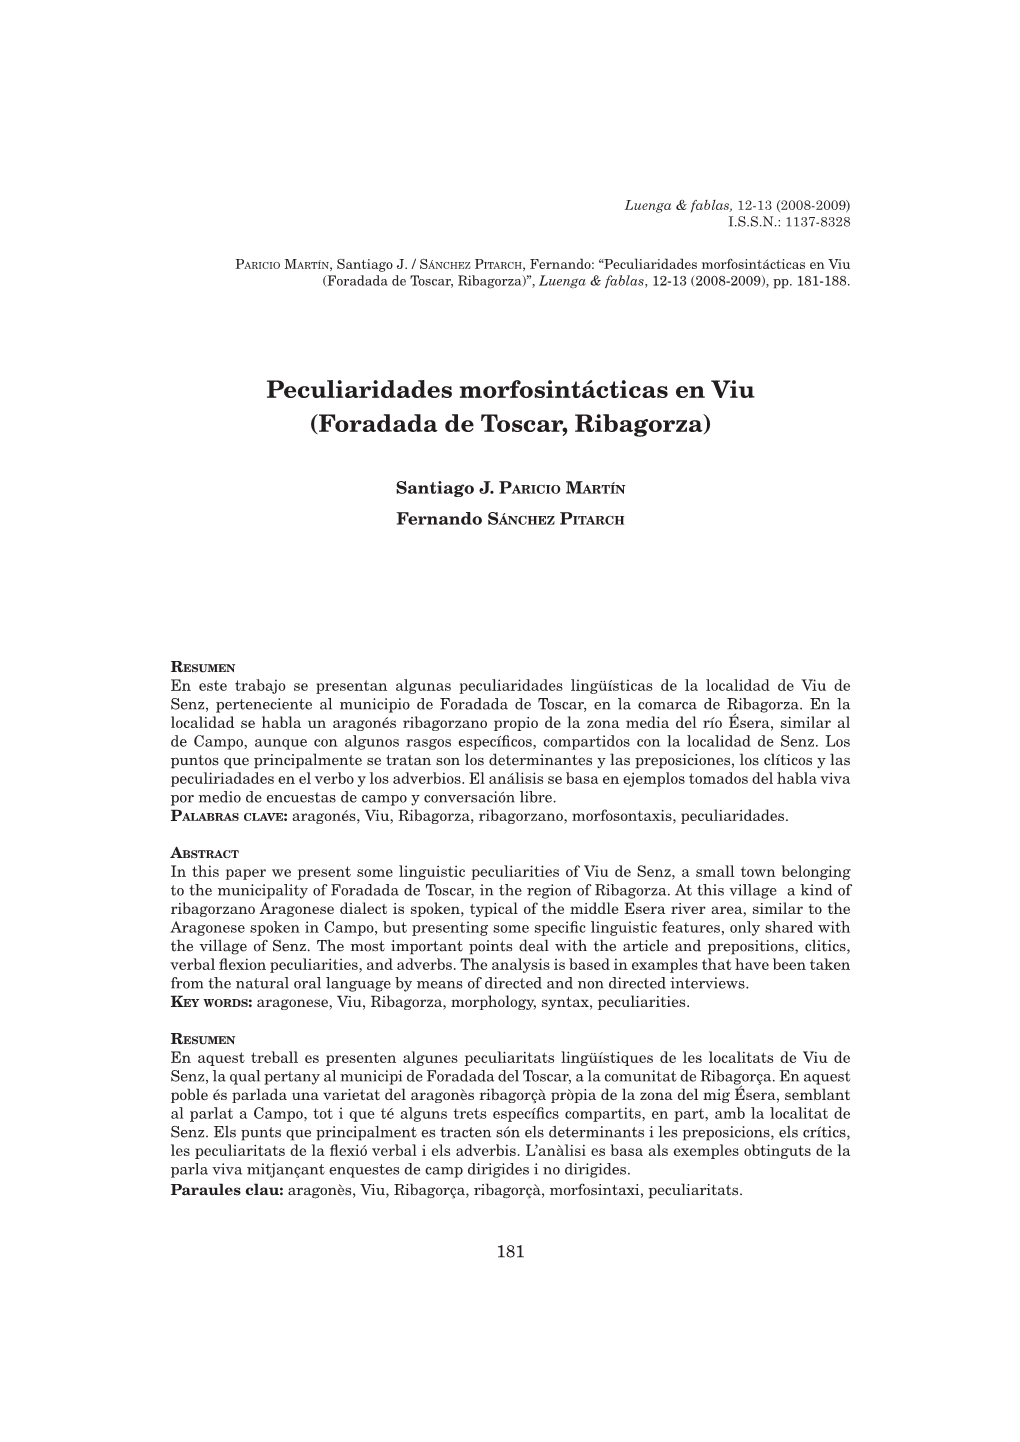 Peculiaridades Morfosintácticas En Viu (Foradada De Toscar, Ribagorza)”, Luenga & Fablas, 12-13 (2008-2009), Pp